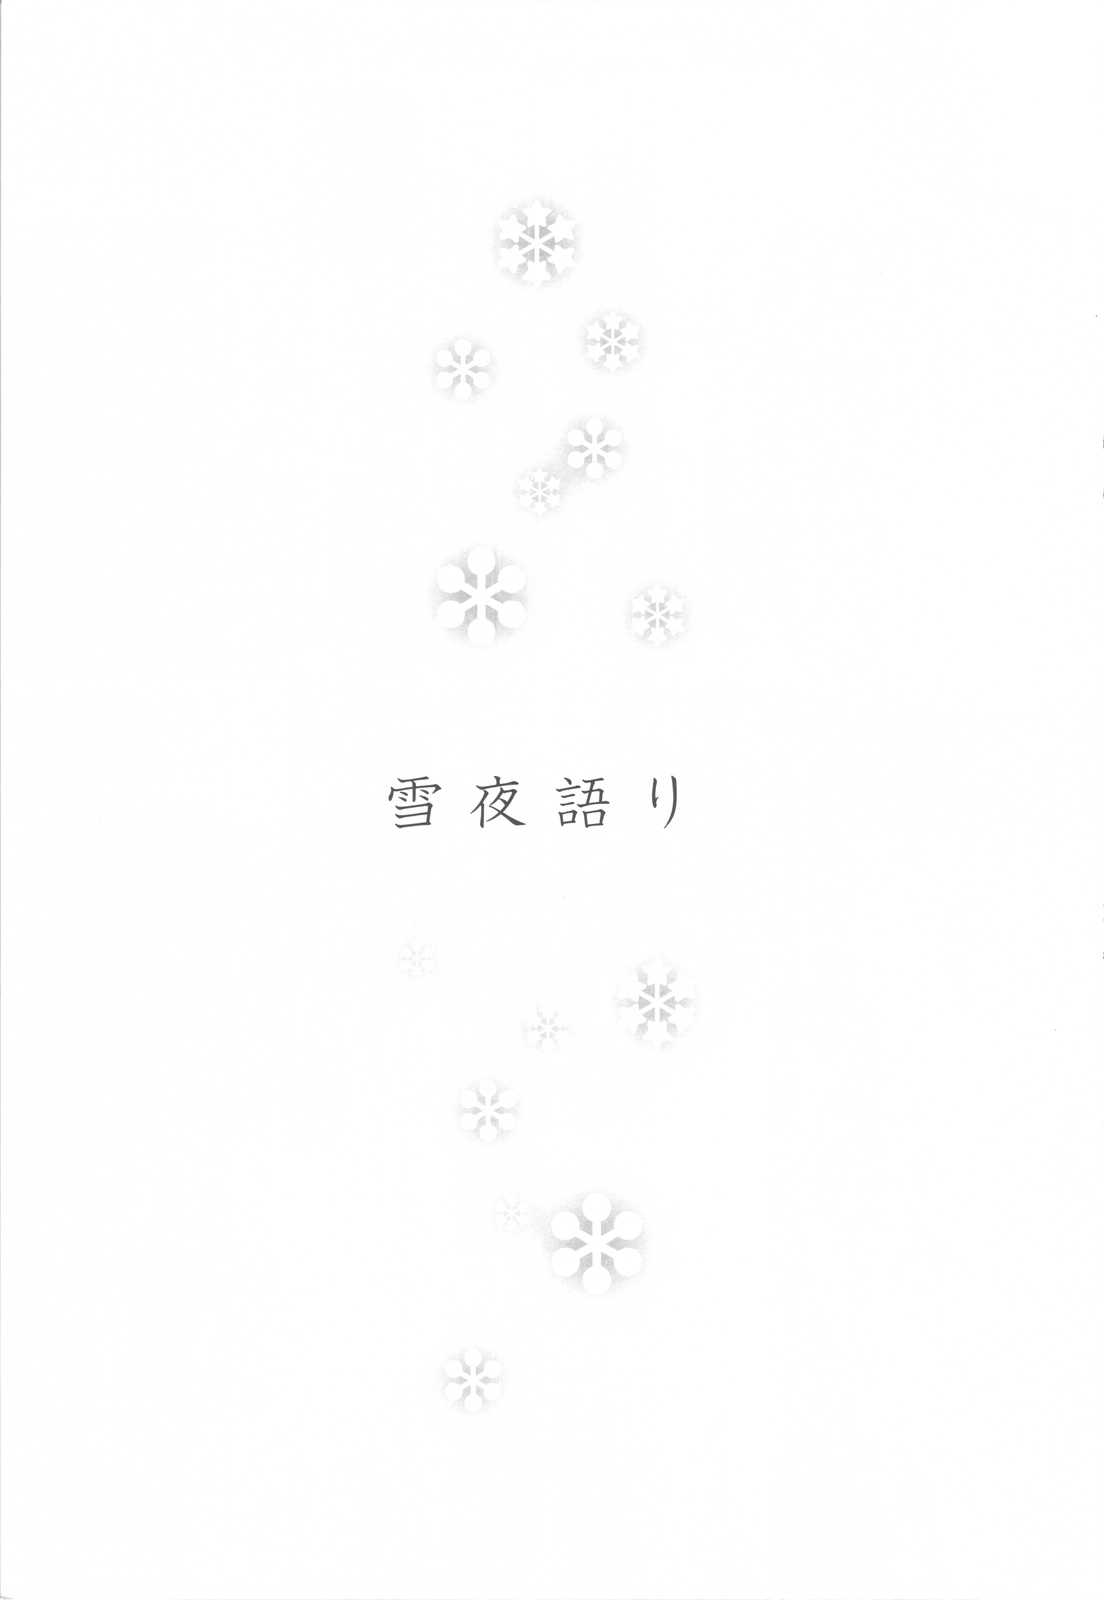 [B.BRS. (B.tarou)] Yukiya Gatari (Final Fantasy Tactics) [B.BRS. (B.tarou)] 雪夜語り (ファイナルファンタジータクティクス)